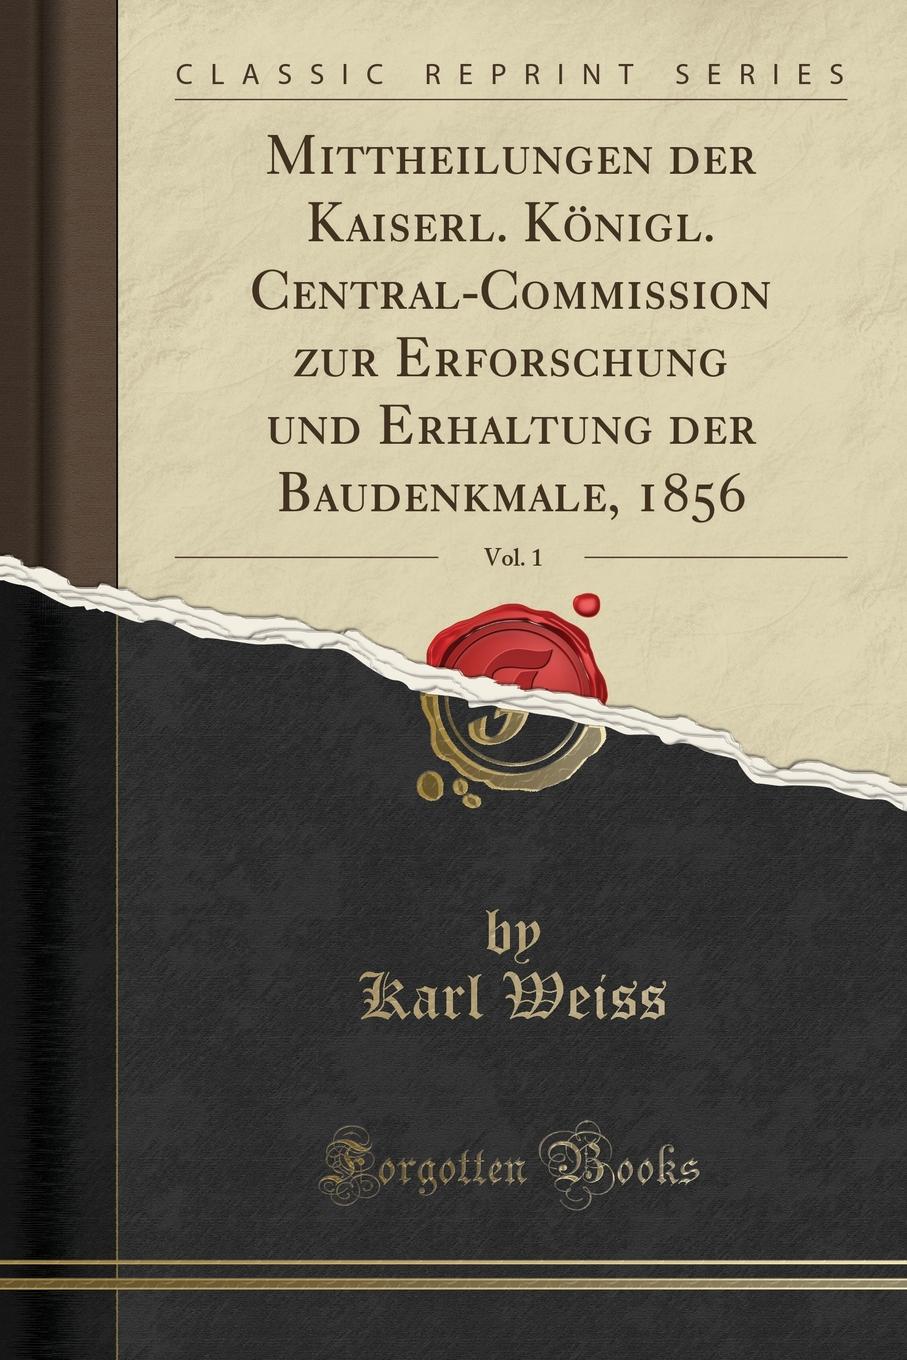 Mittheilungen der Kaiserl. Konigl. Central-Commission zur Erforschung und Erhaltung der Baudenkmale, 1856, Vol. 1 (Classic Reprint)